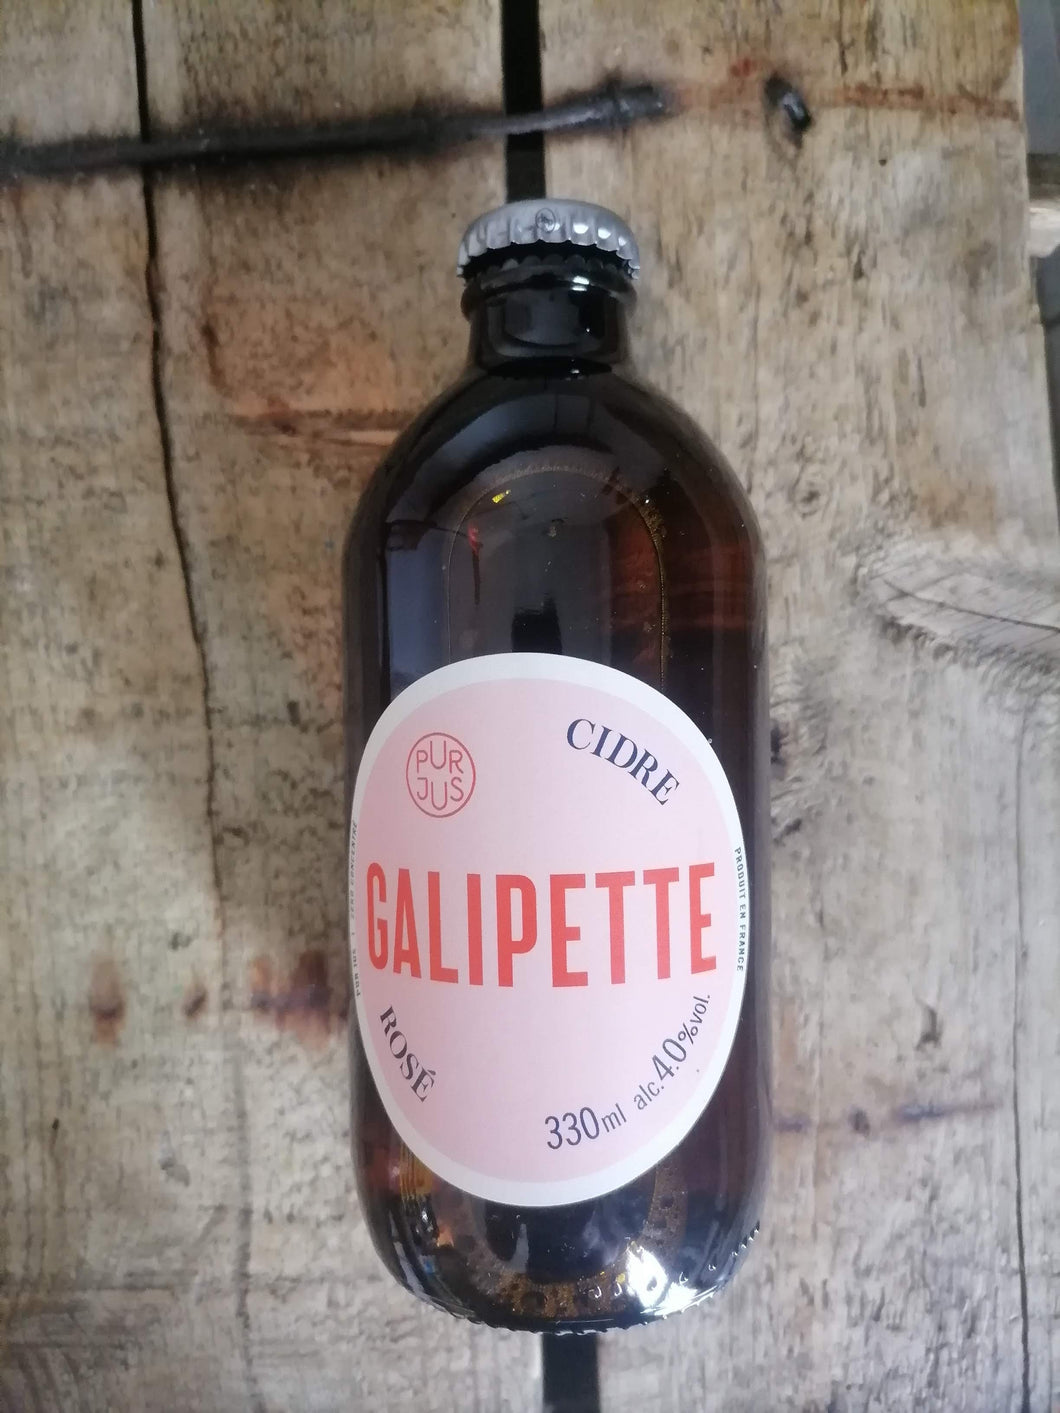 Galipette Cidre Rose 4% (330ml bottle)